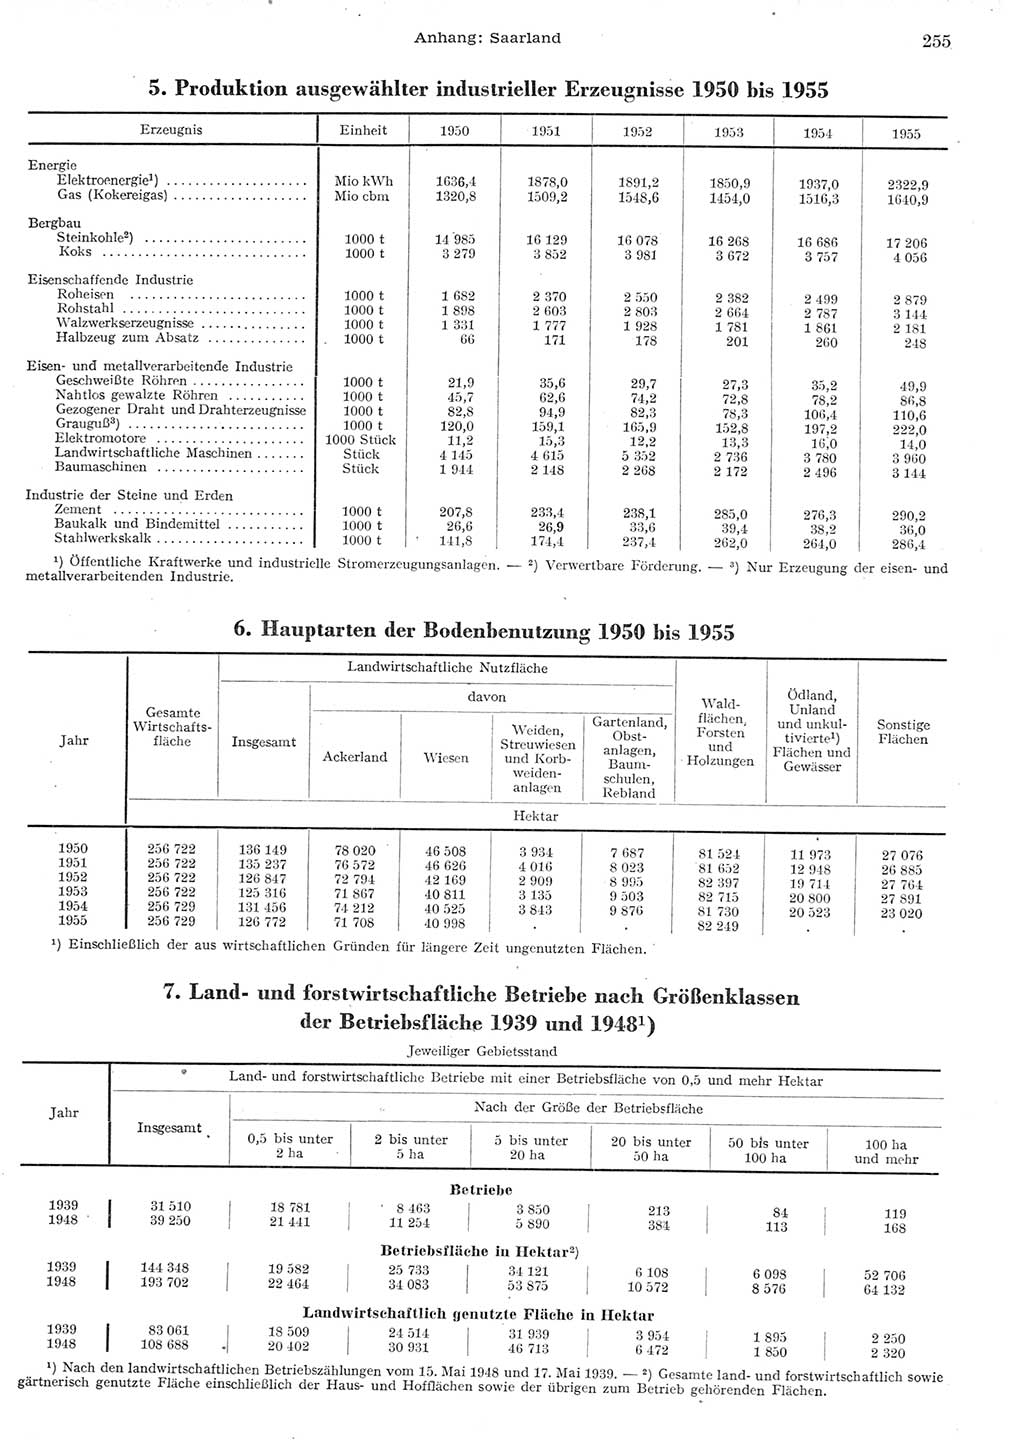 Statistisches Jahrbuch der Deutschen Demokratischen Republik (DDR) 1955, Seite 255 (Stat. Jb. DDR 1955, S. 255)